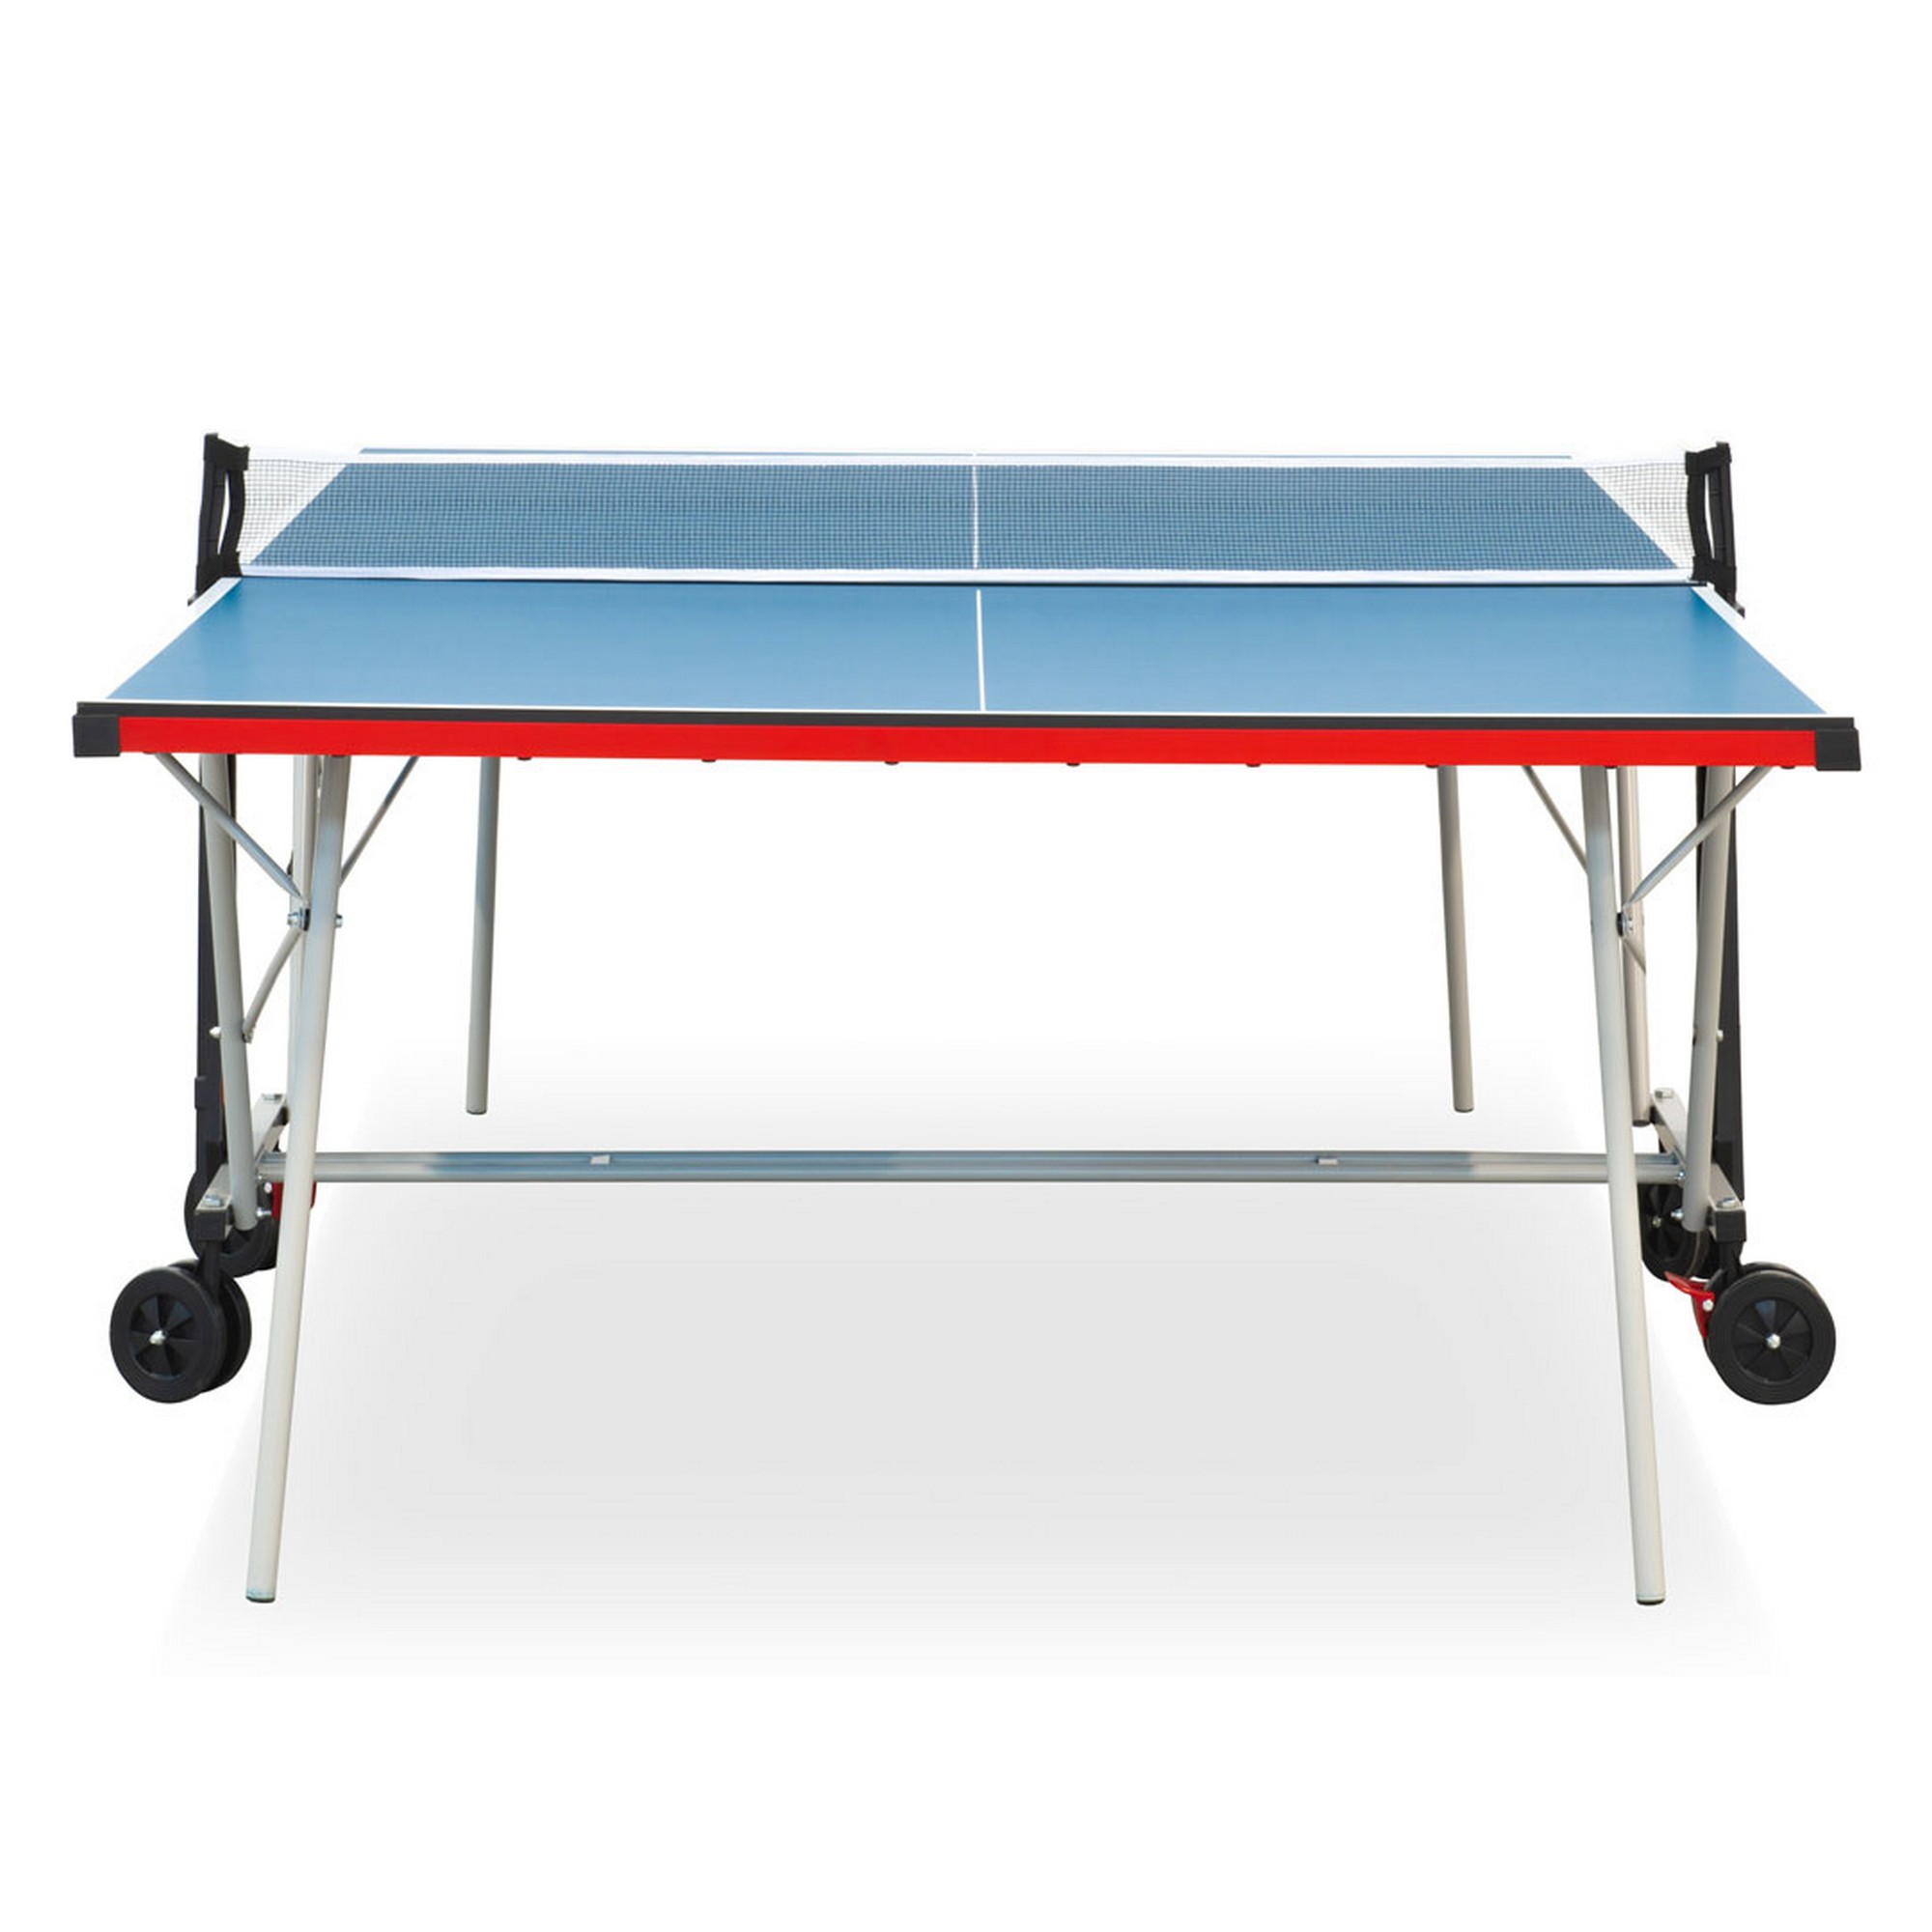 Теннисный стол складной для помещений S-150 Winner 51.150.02.0 2000_2000